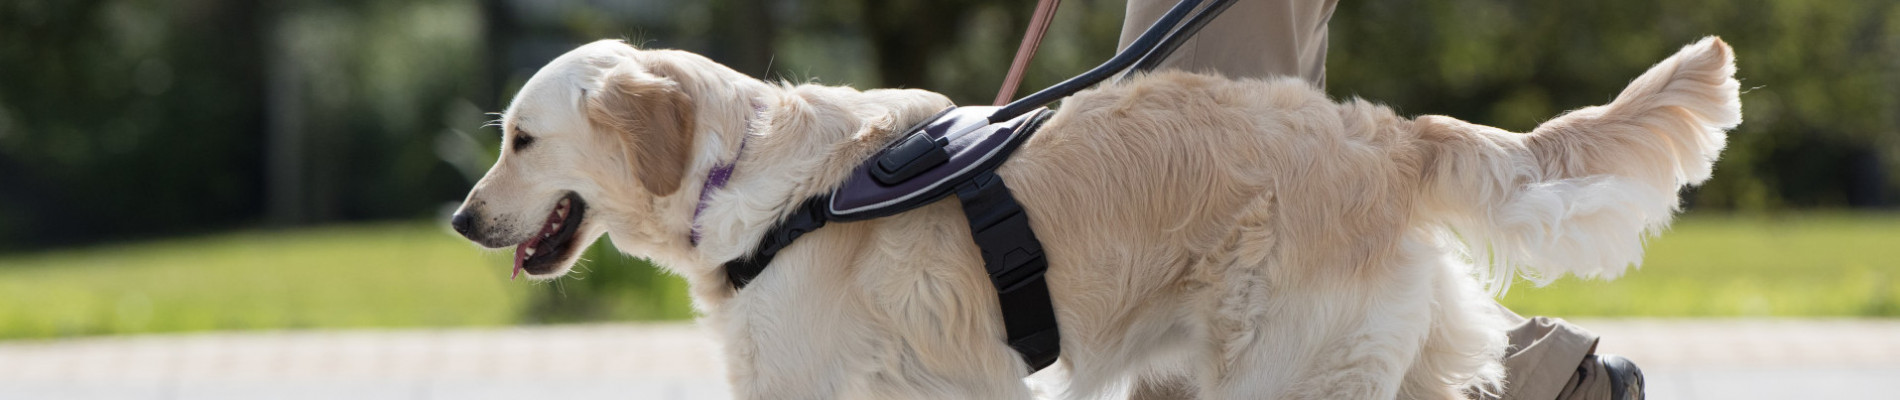 Trainer lopend met blindengeleidehond in paars tuig